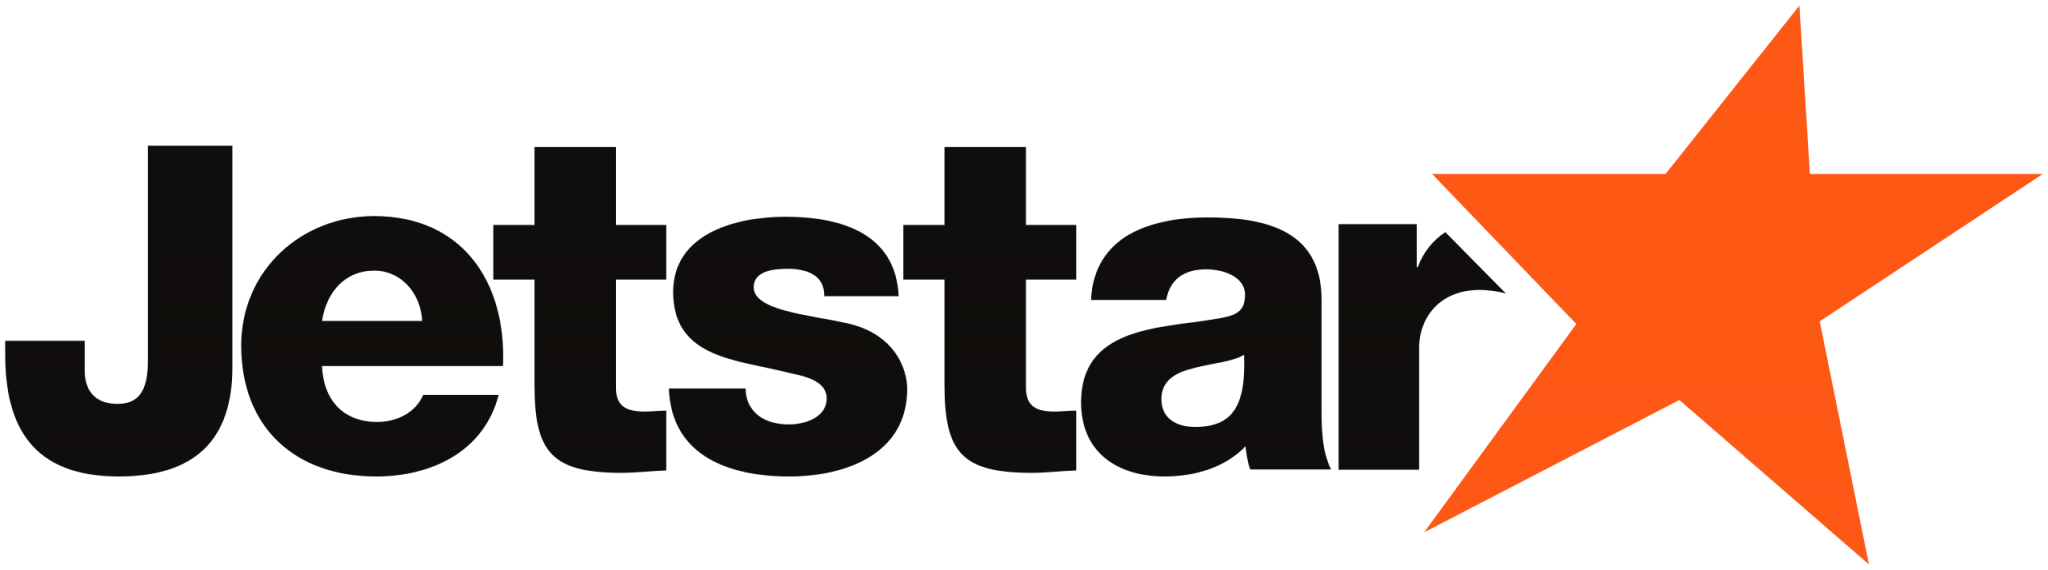 Jetstar_logo.svg